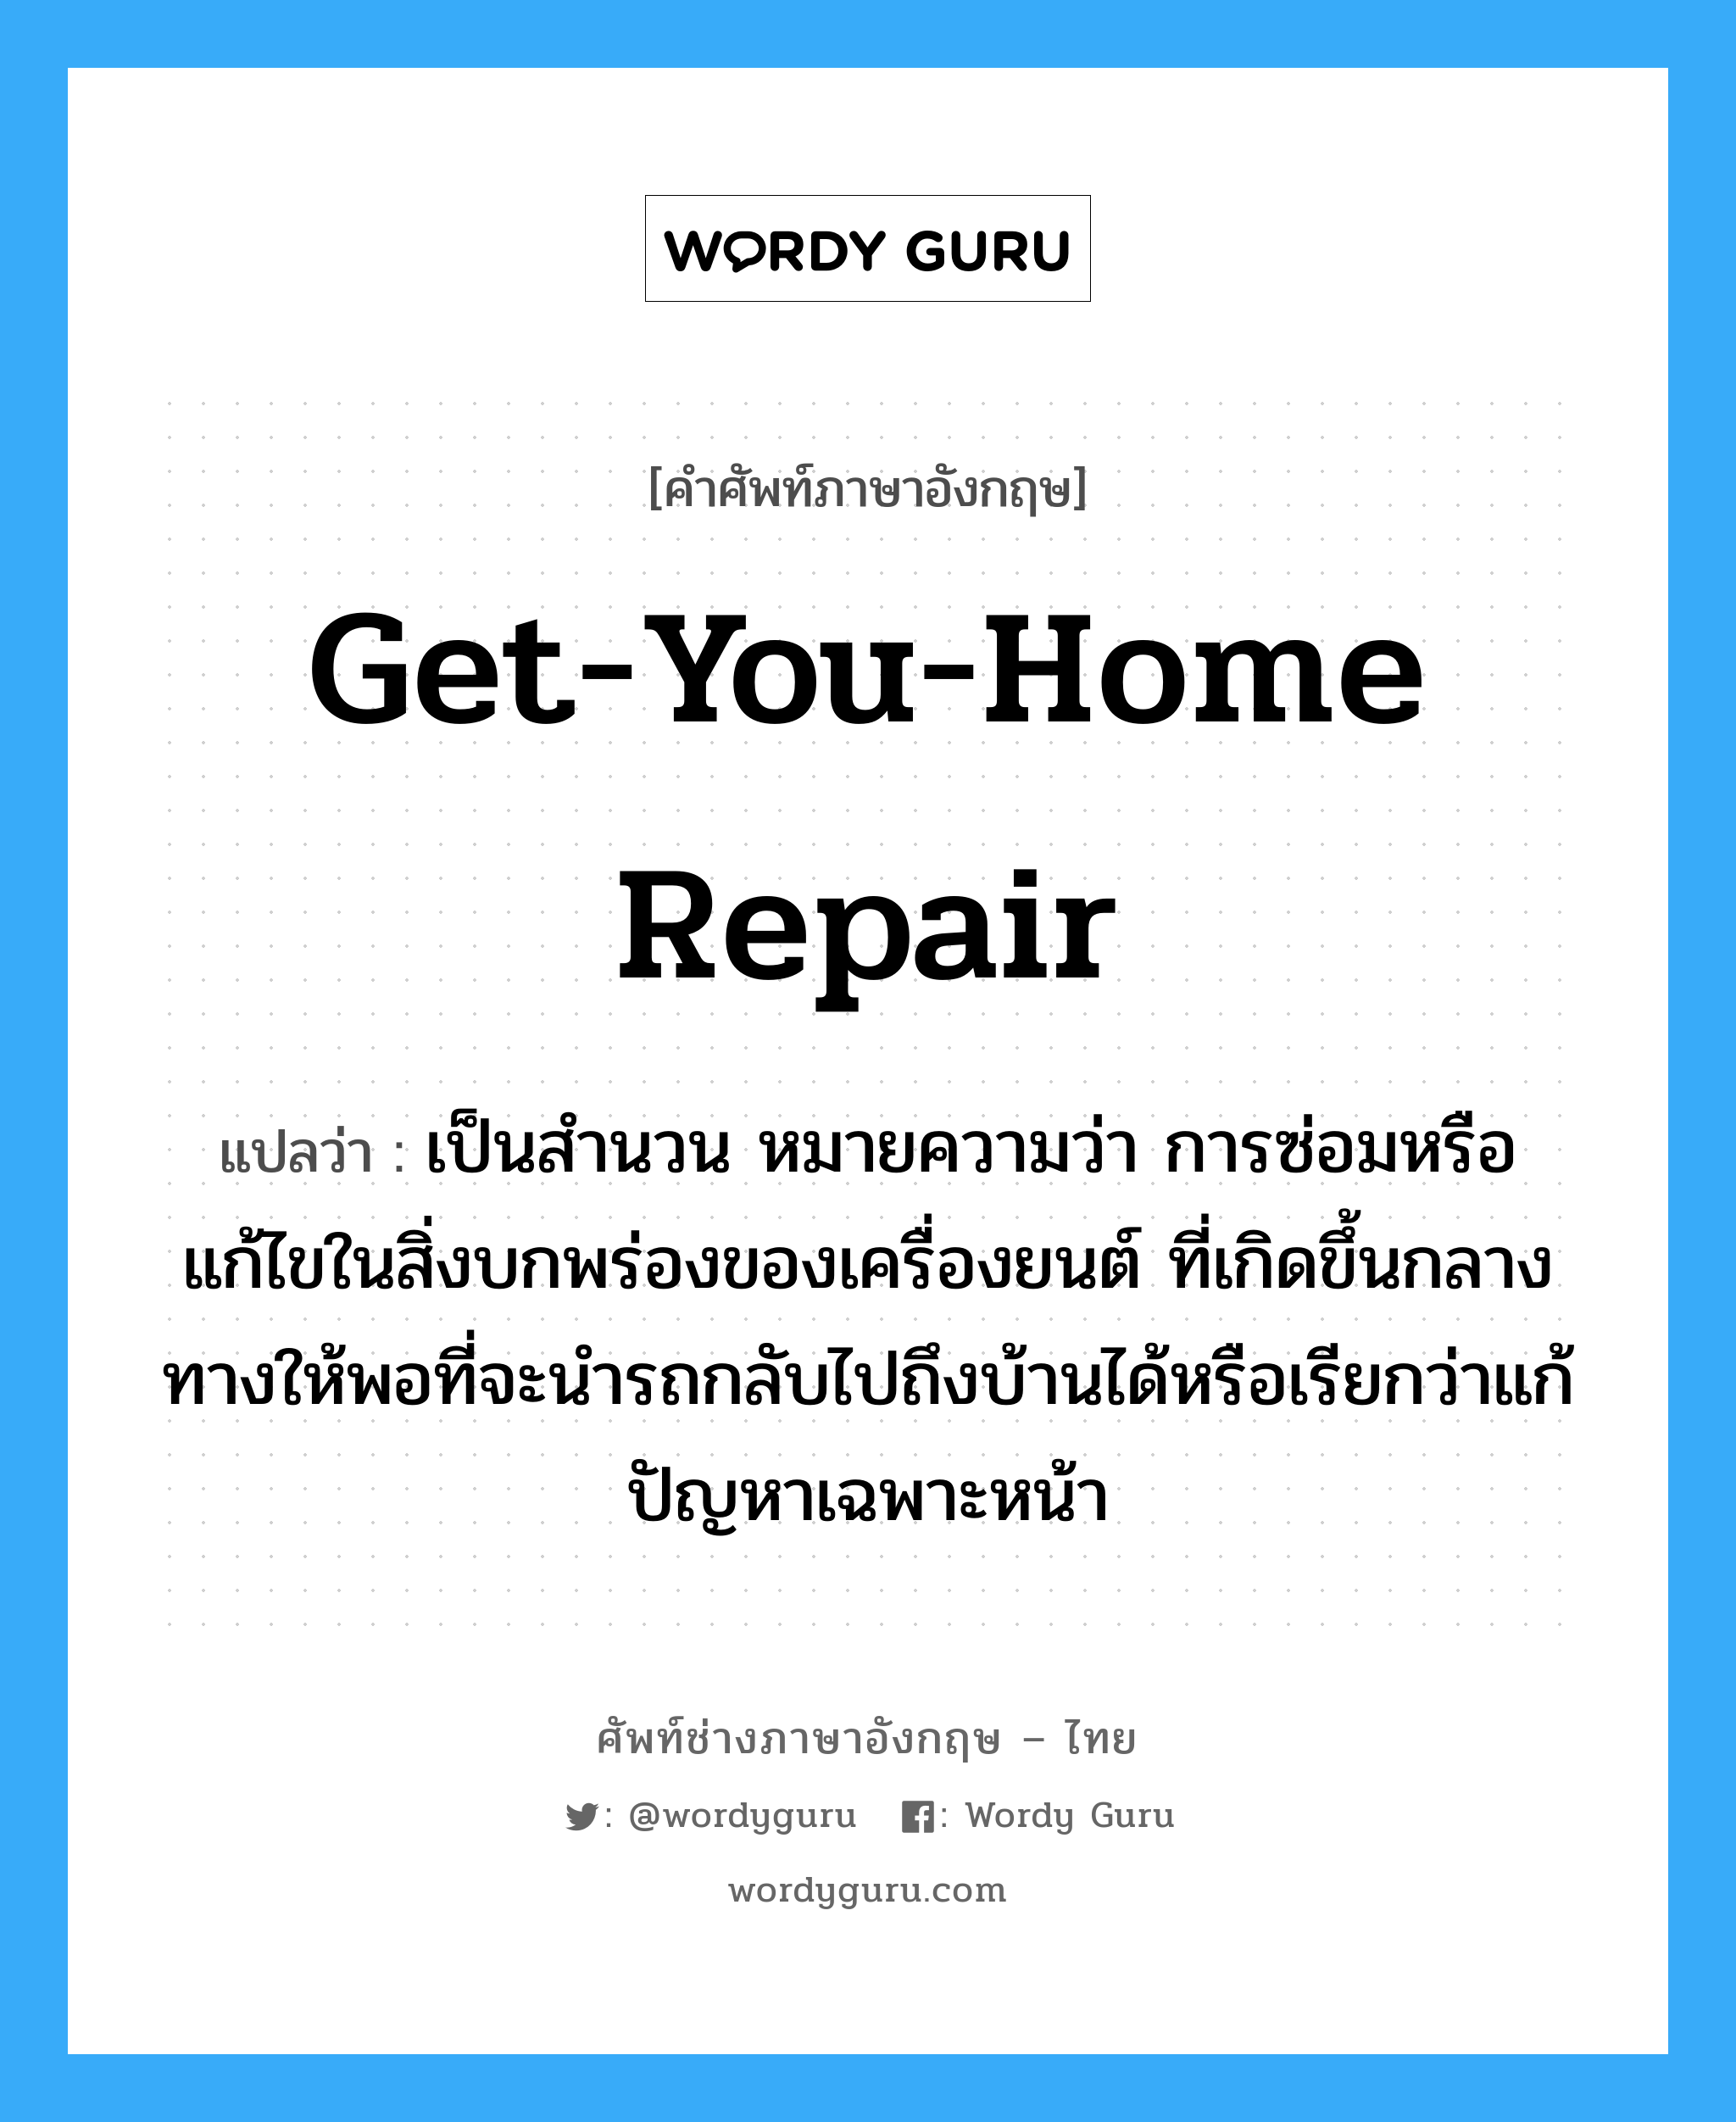 get-you-home repair แปลว่า?, คำศัพท์ช่างภาษาอังกฤษ - ไทย get-you-home repair คำศัพท์ภาษาอังกฤษ get-you-home repair แปลว่า เป็นสำนวน หมายความว่า การซ่อมหรือแก้ไขในสิ่งบกพร่องของเครื่องยนต์ ที่เกิดขึ้นกลางทางให้พอที่จะนำรถกลับไปถึงบ้านได้หรือเรียกว่าแก้ปัญหาเฉพาะหน้า